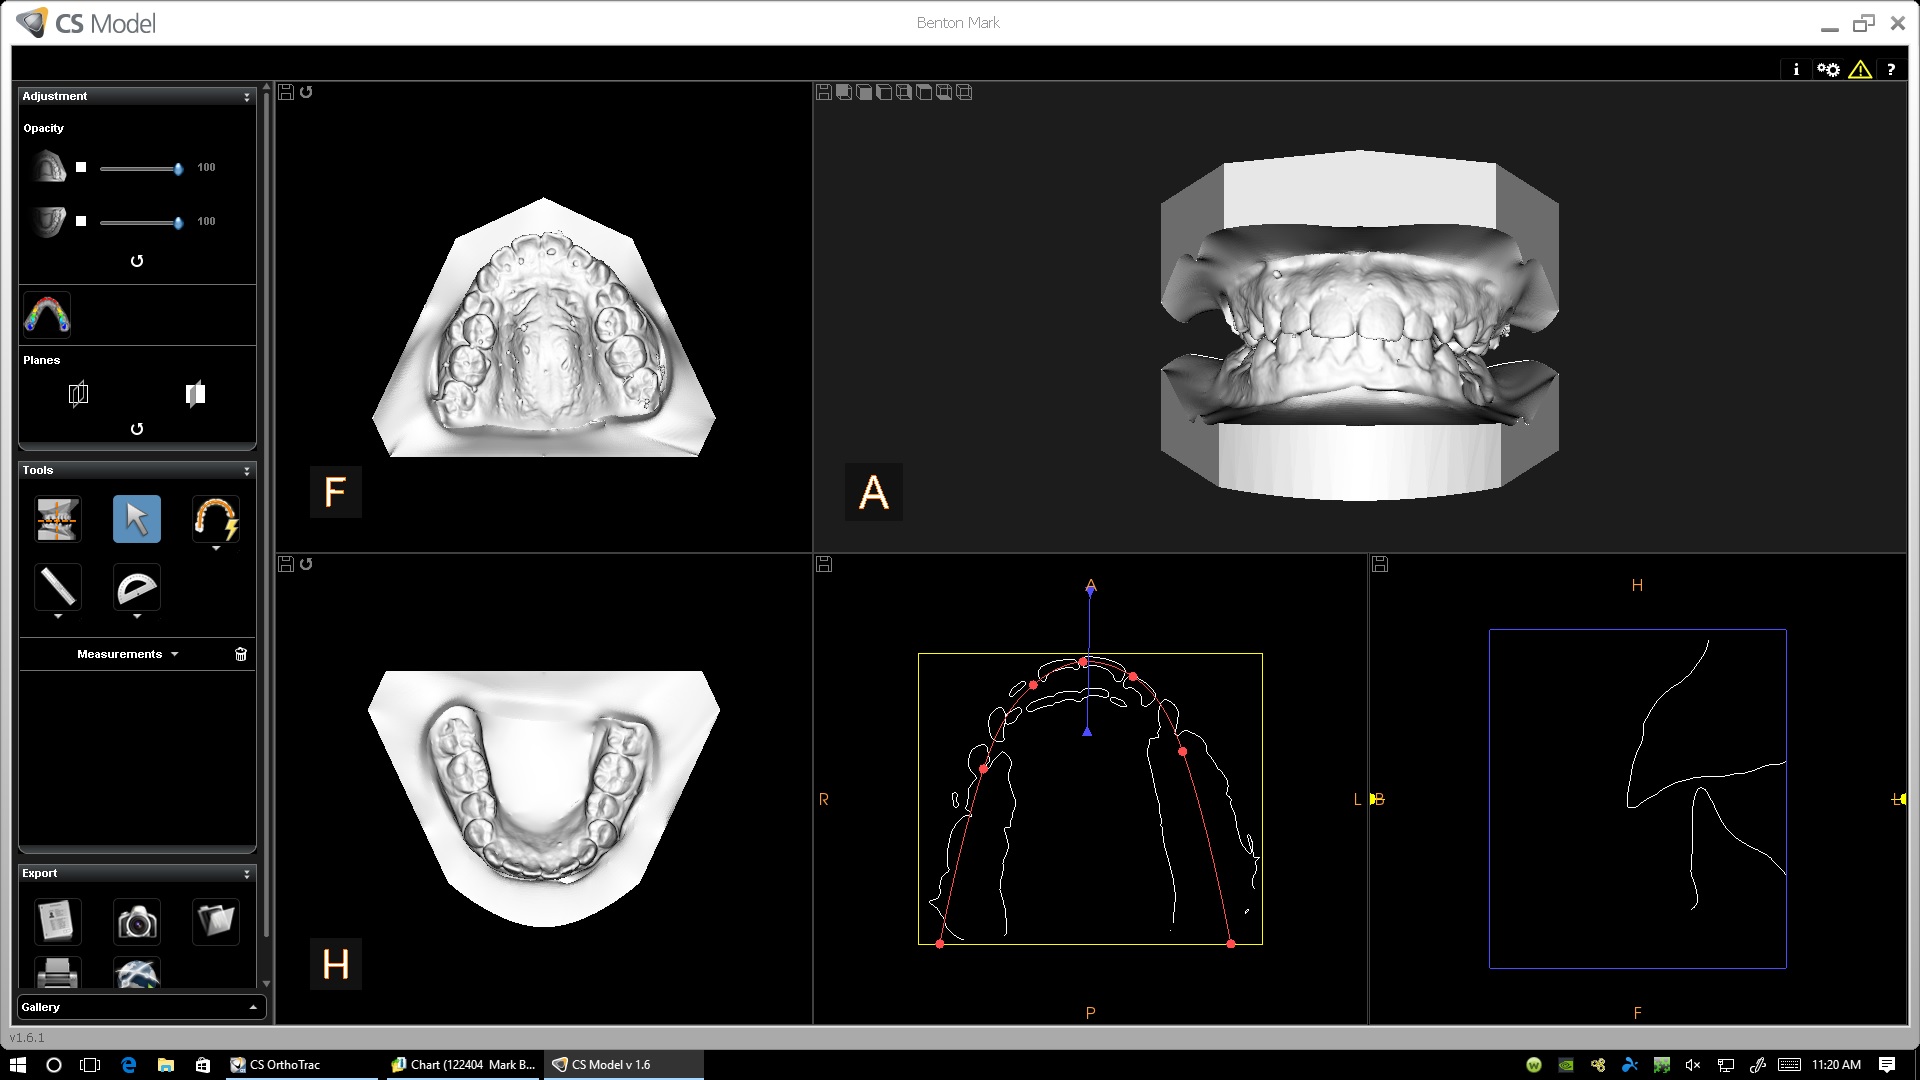 impression-free dental 3D model